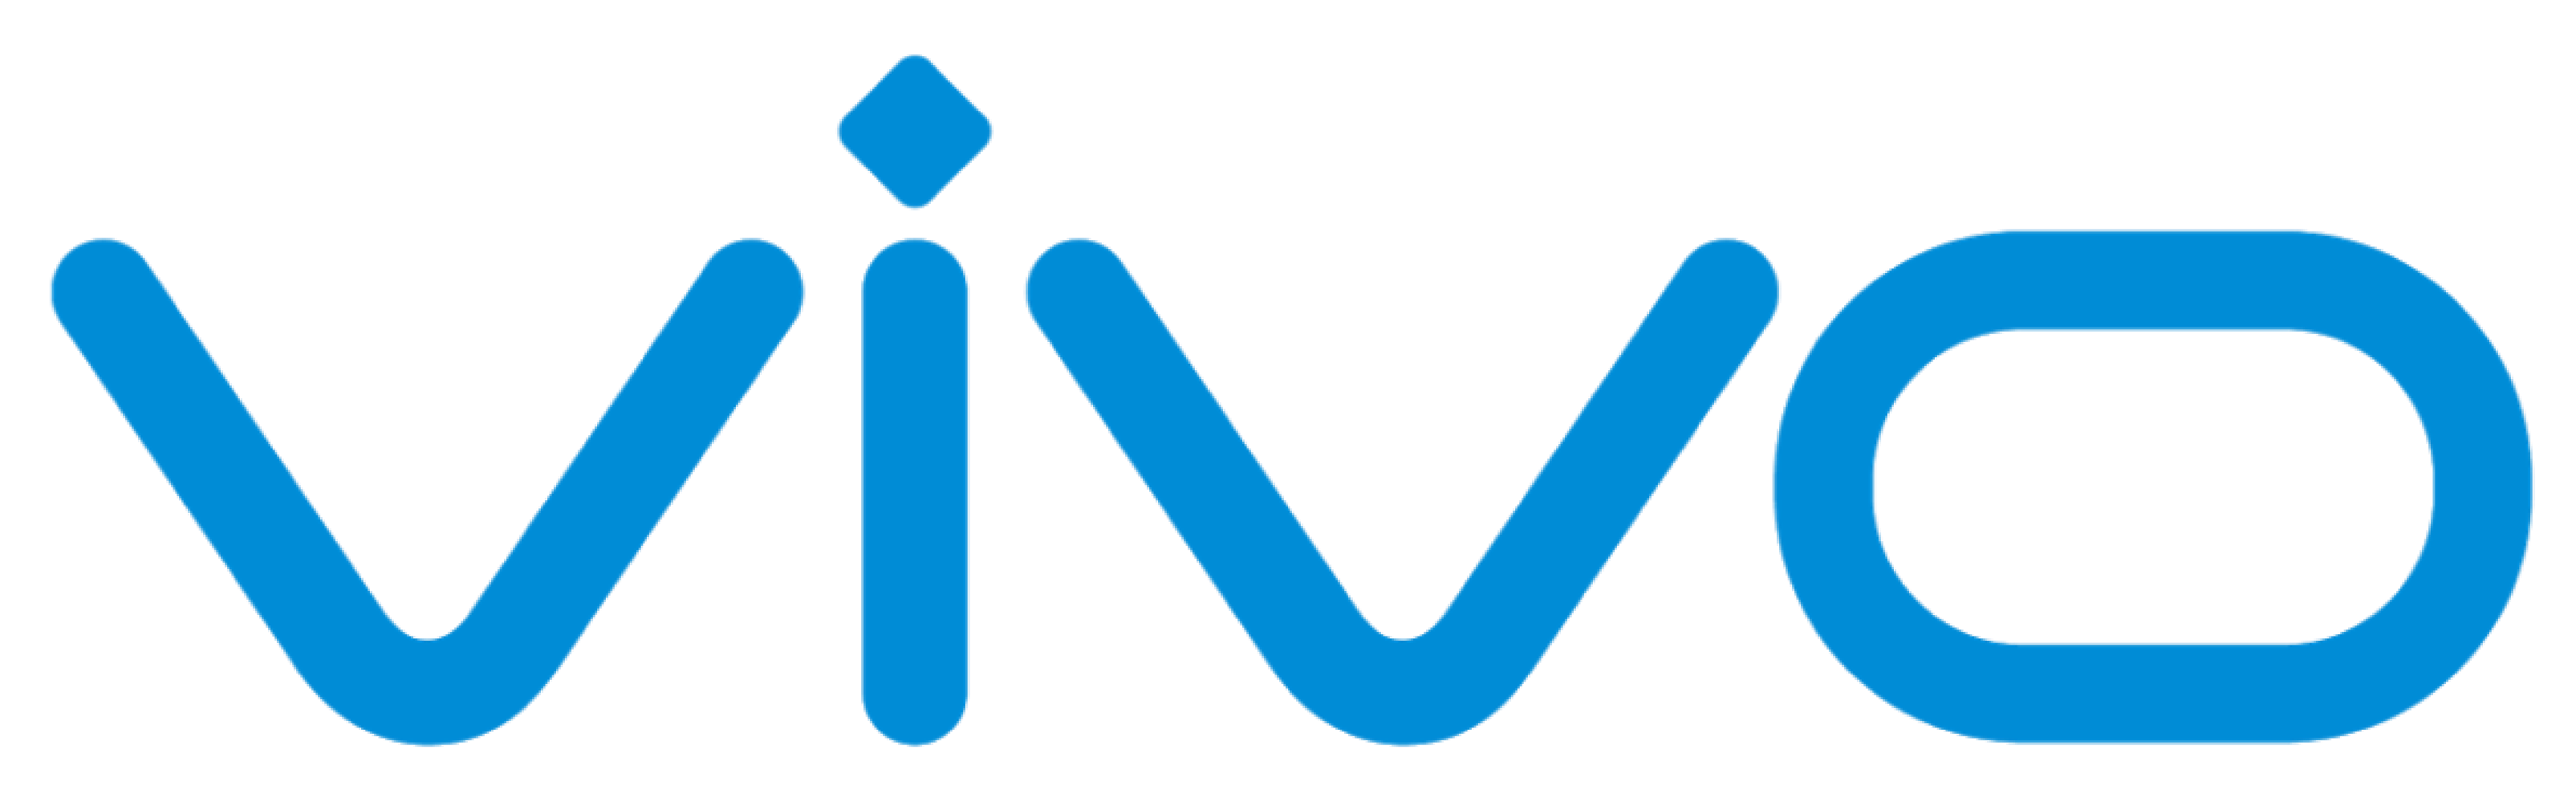 Download Logo Vivo cdr dan png